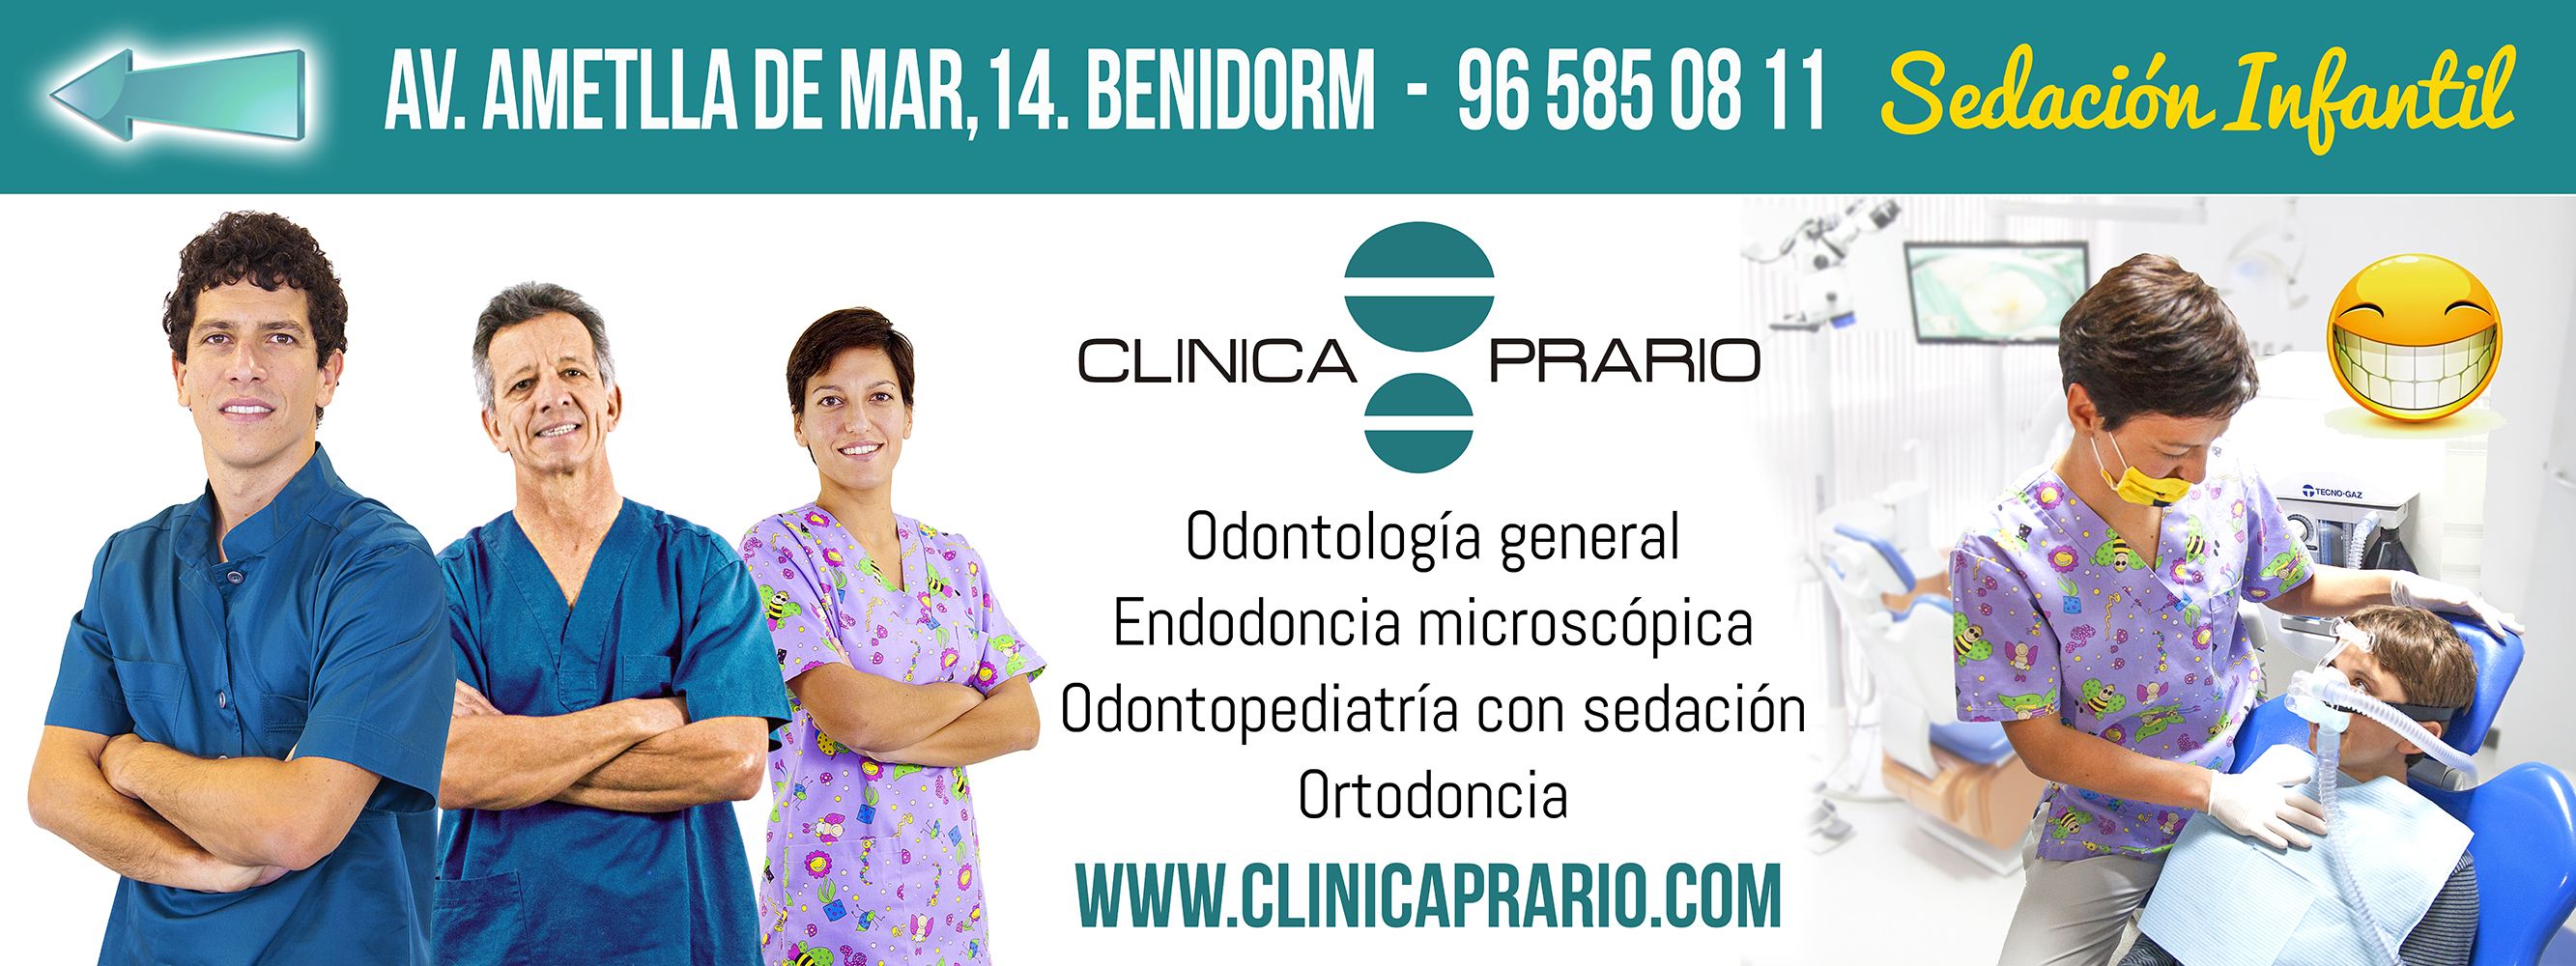 Clínica Dental Prario. Especialistas en endodoncia y odontología infantil